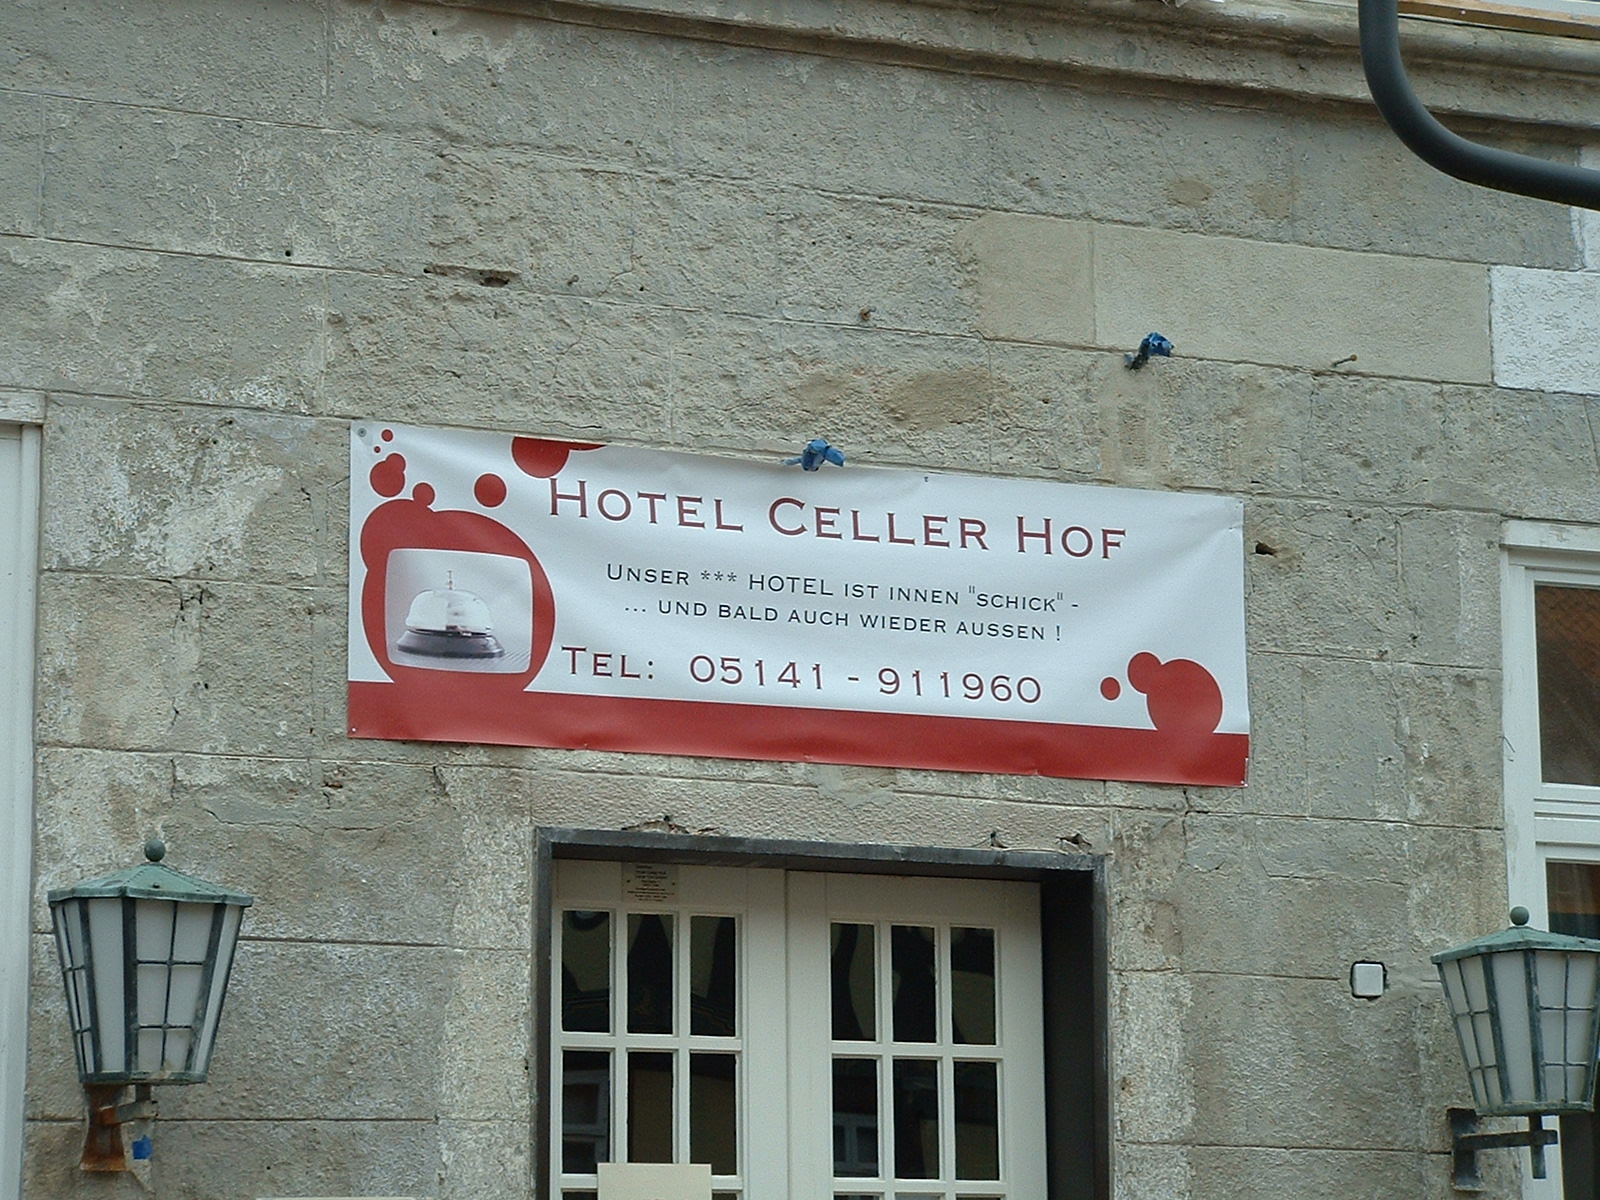 Hotel Celler Hof 27. Februar 2011